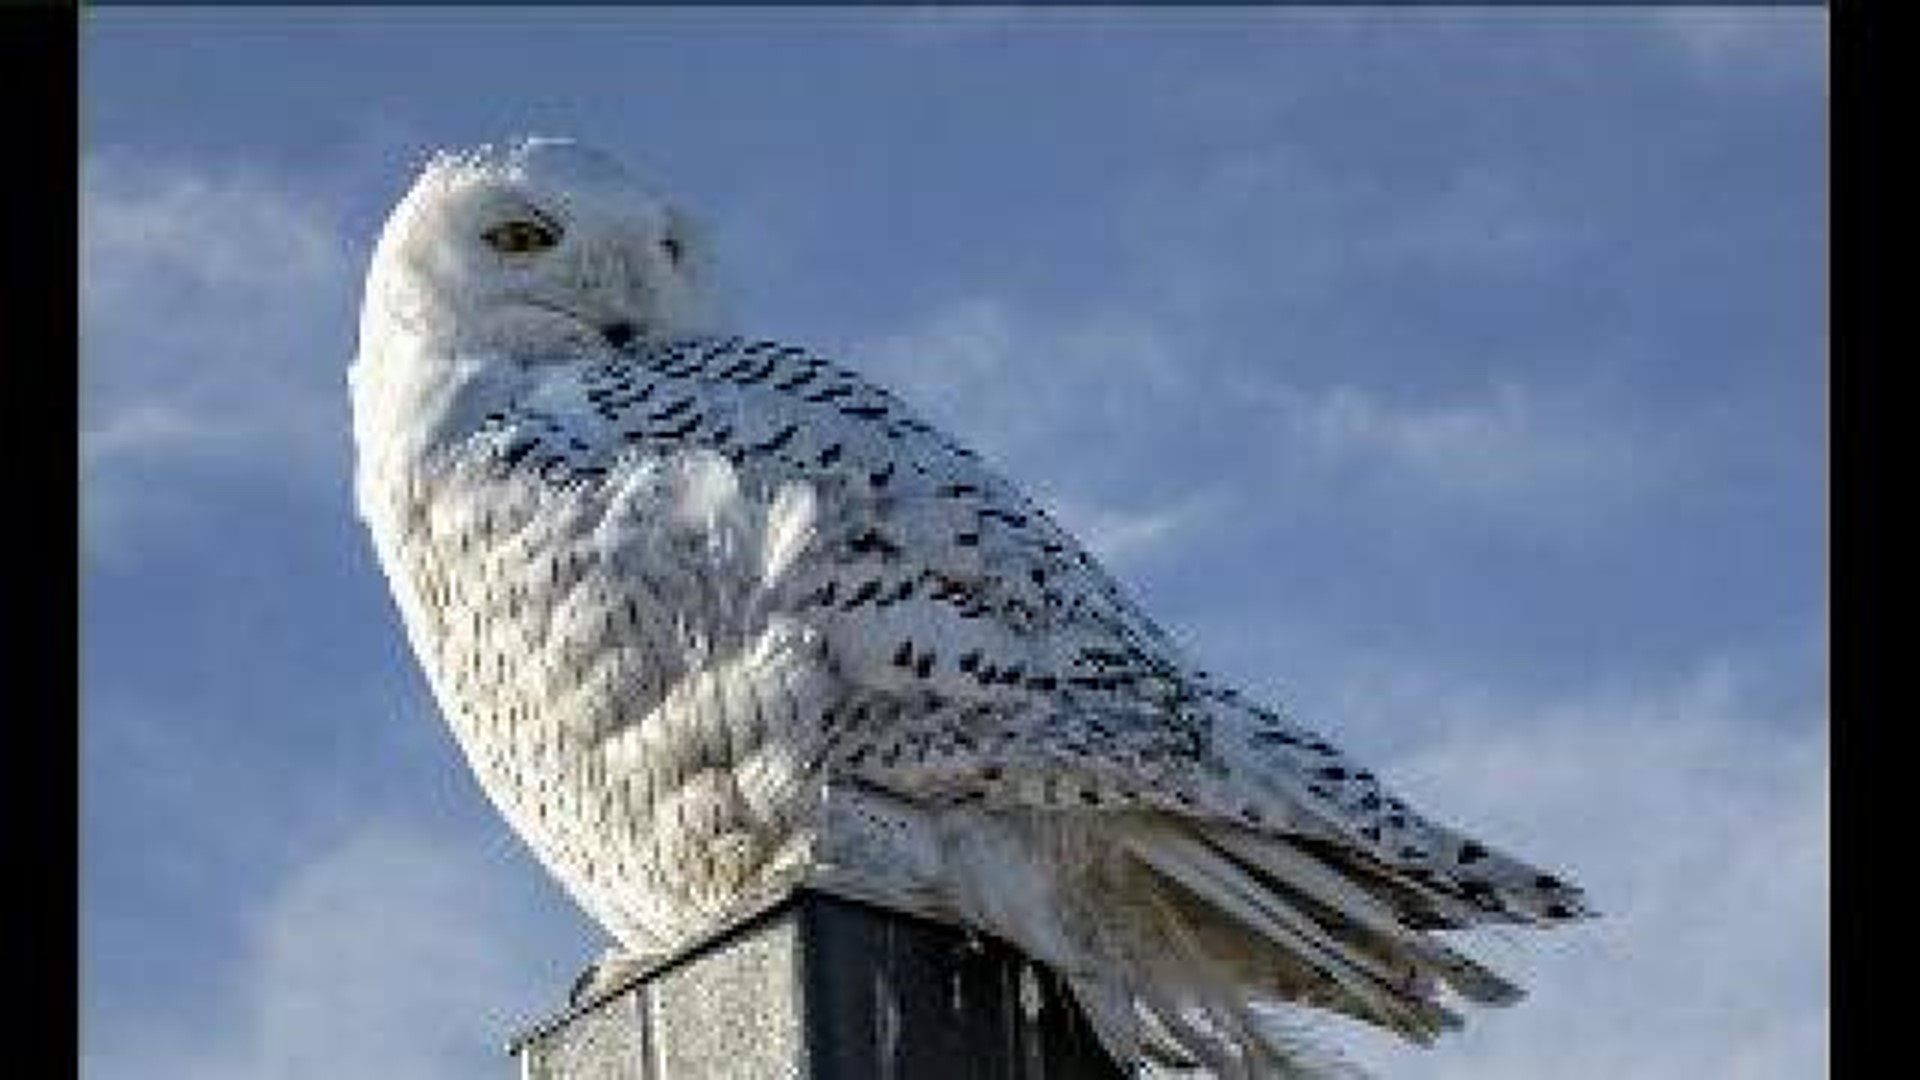 Snowy Owl Drawing Crowds In Hazelton Area